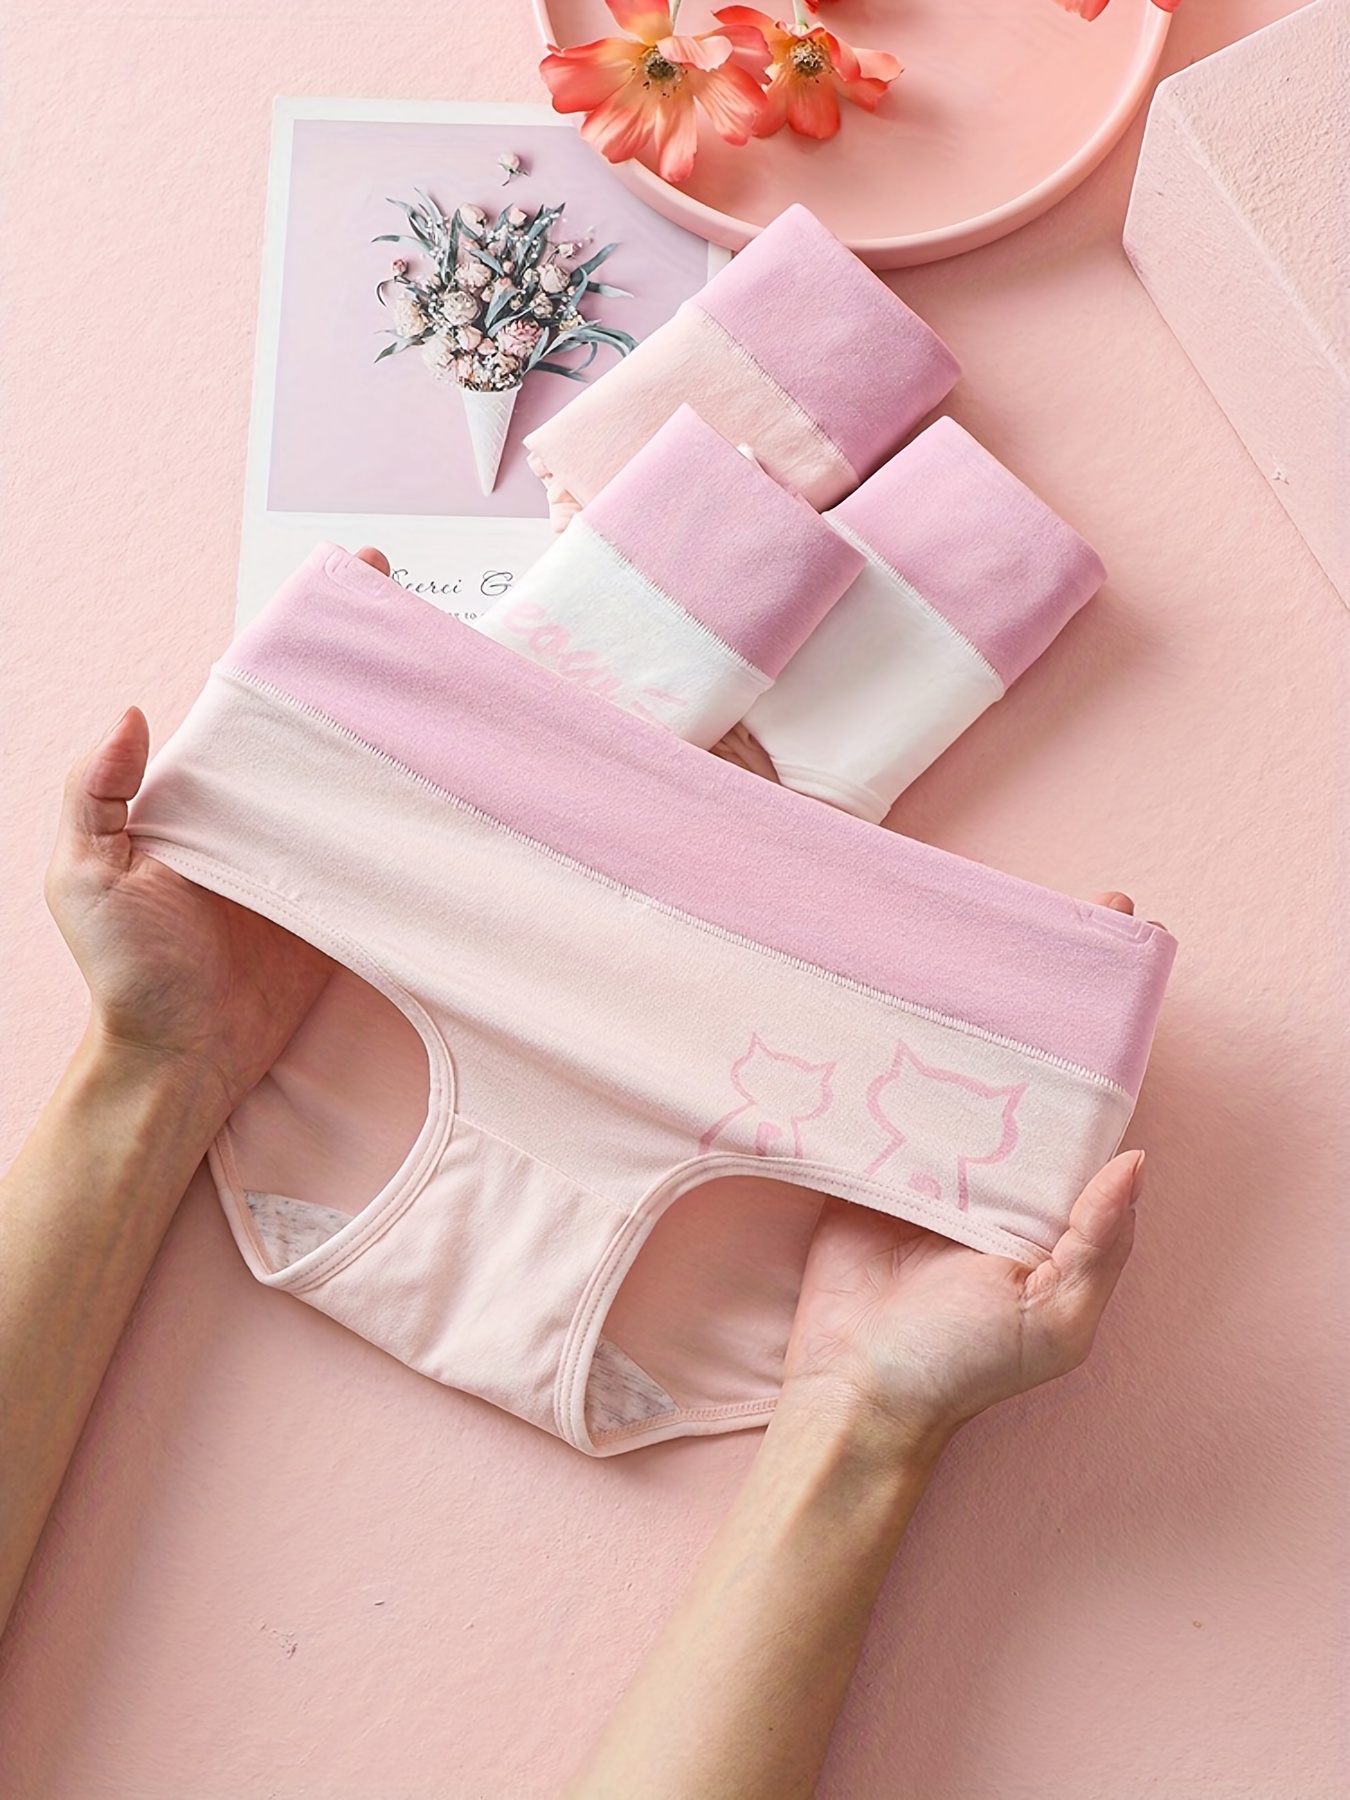 Cat Panties for Women